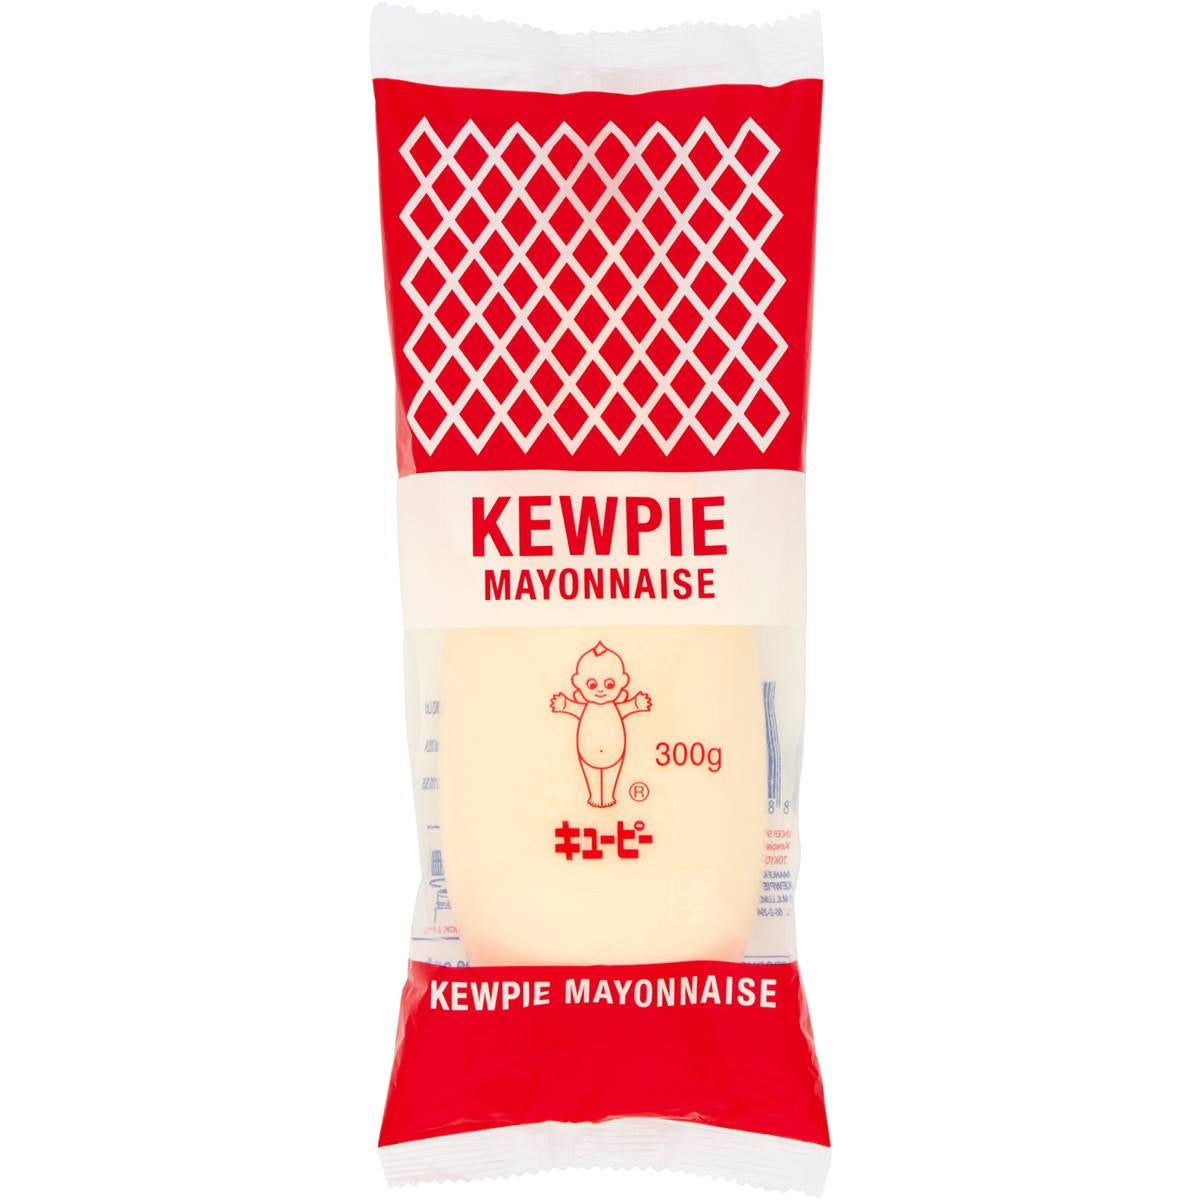 Kewpie Mayonnaise 500g